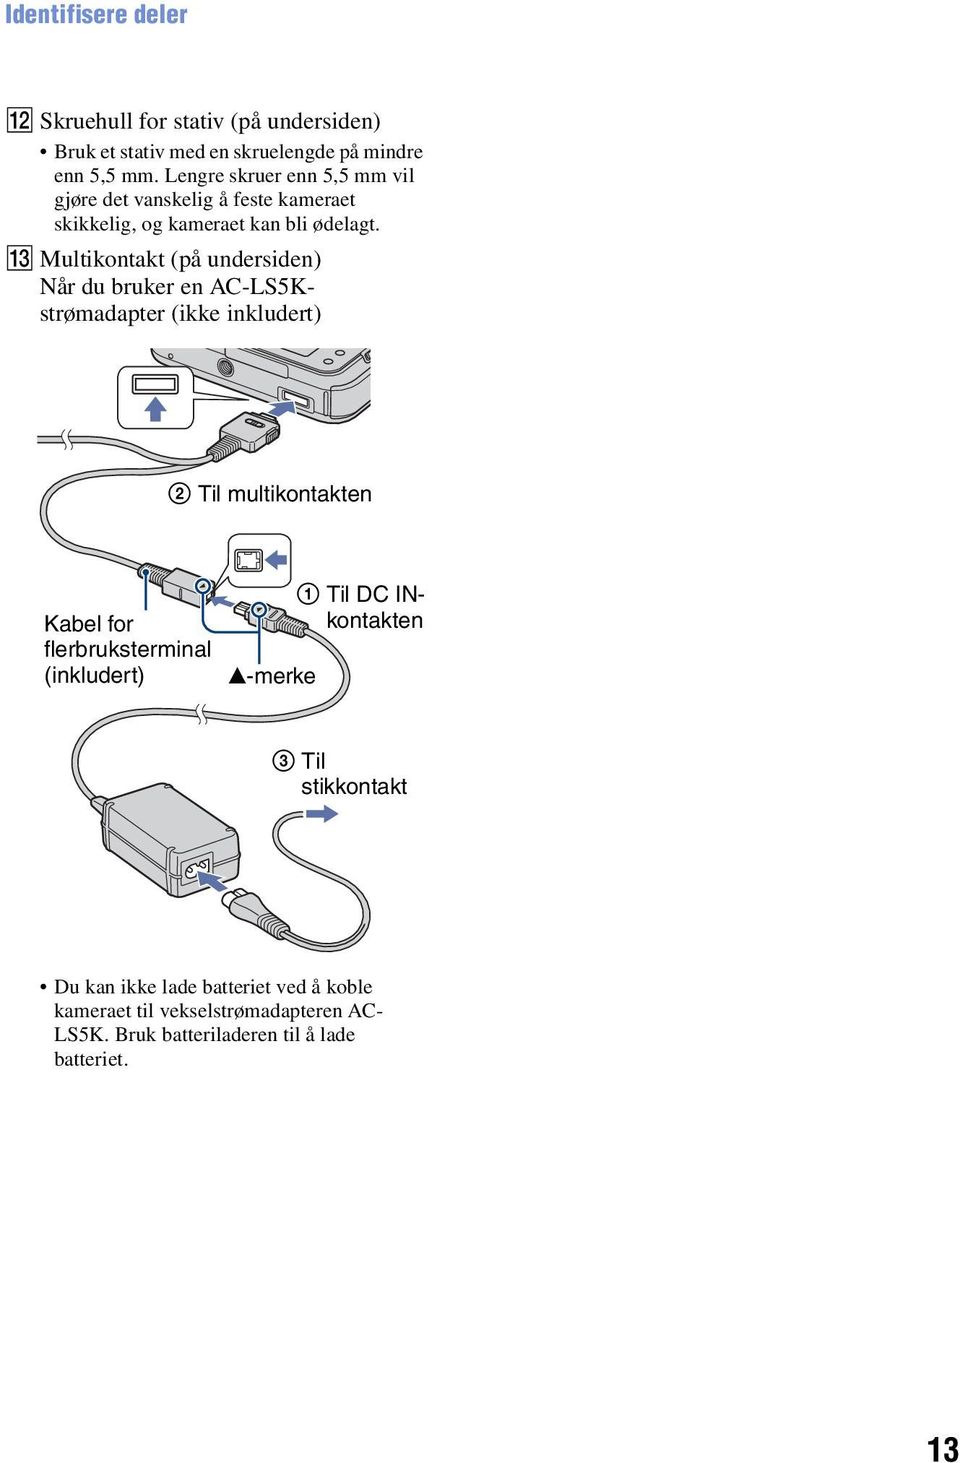 M Multikontakt (på undersiden) Når du bruker en AC-LS5Kstrømadapter (ikke inkludert) 2 Til multikontakten Kabel for flerbruksterminal